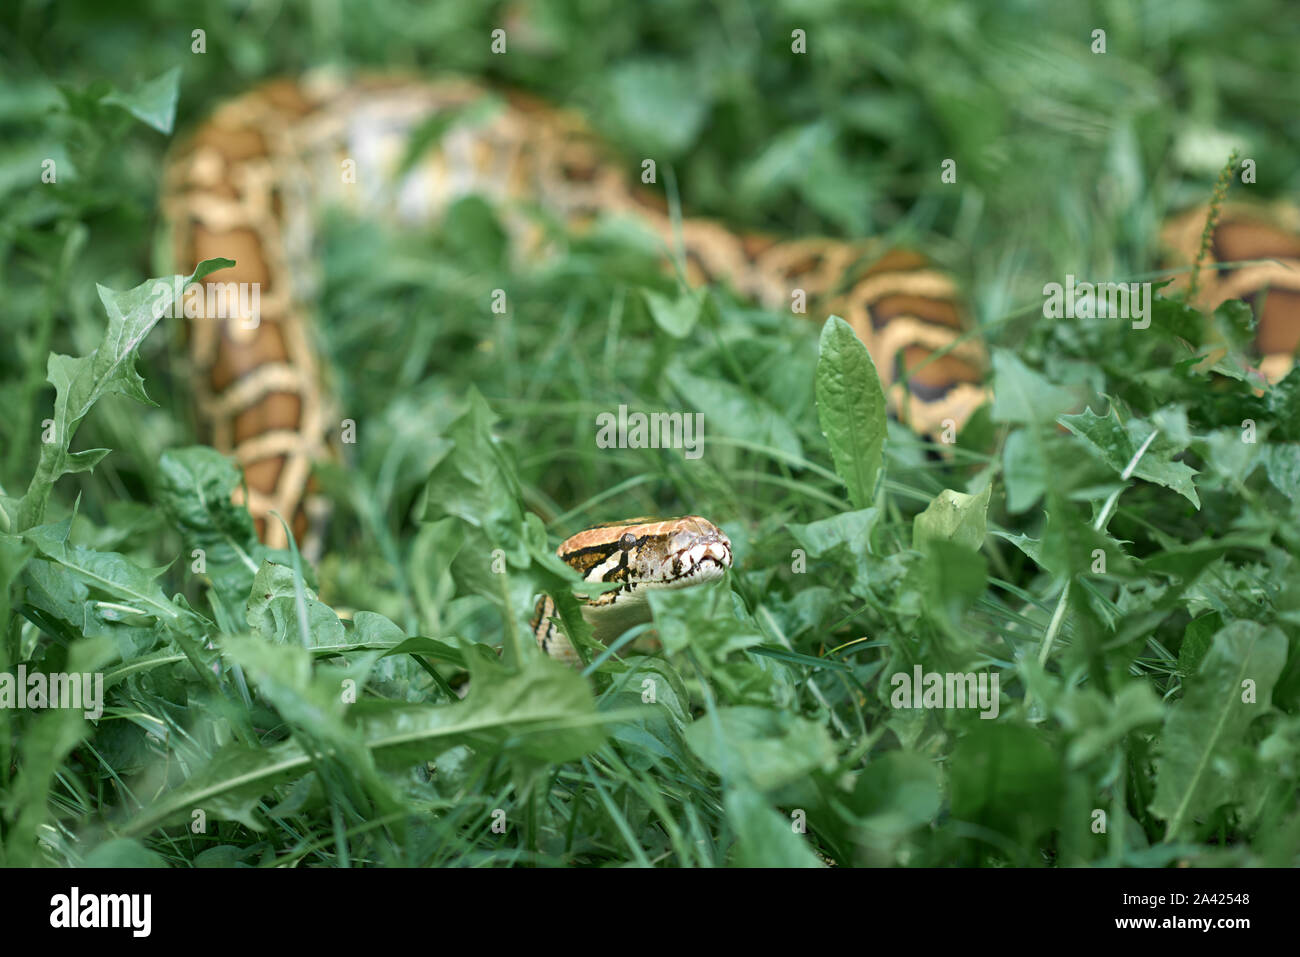 Un serpent, snake et crowling rampante à l'extérieur. Phyton couché dans la verdure dans le jardin. Banque D'Images